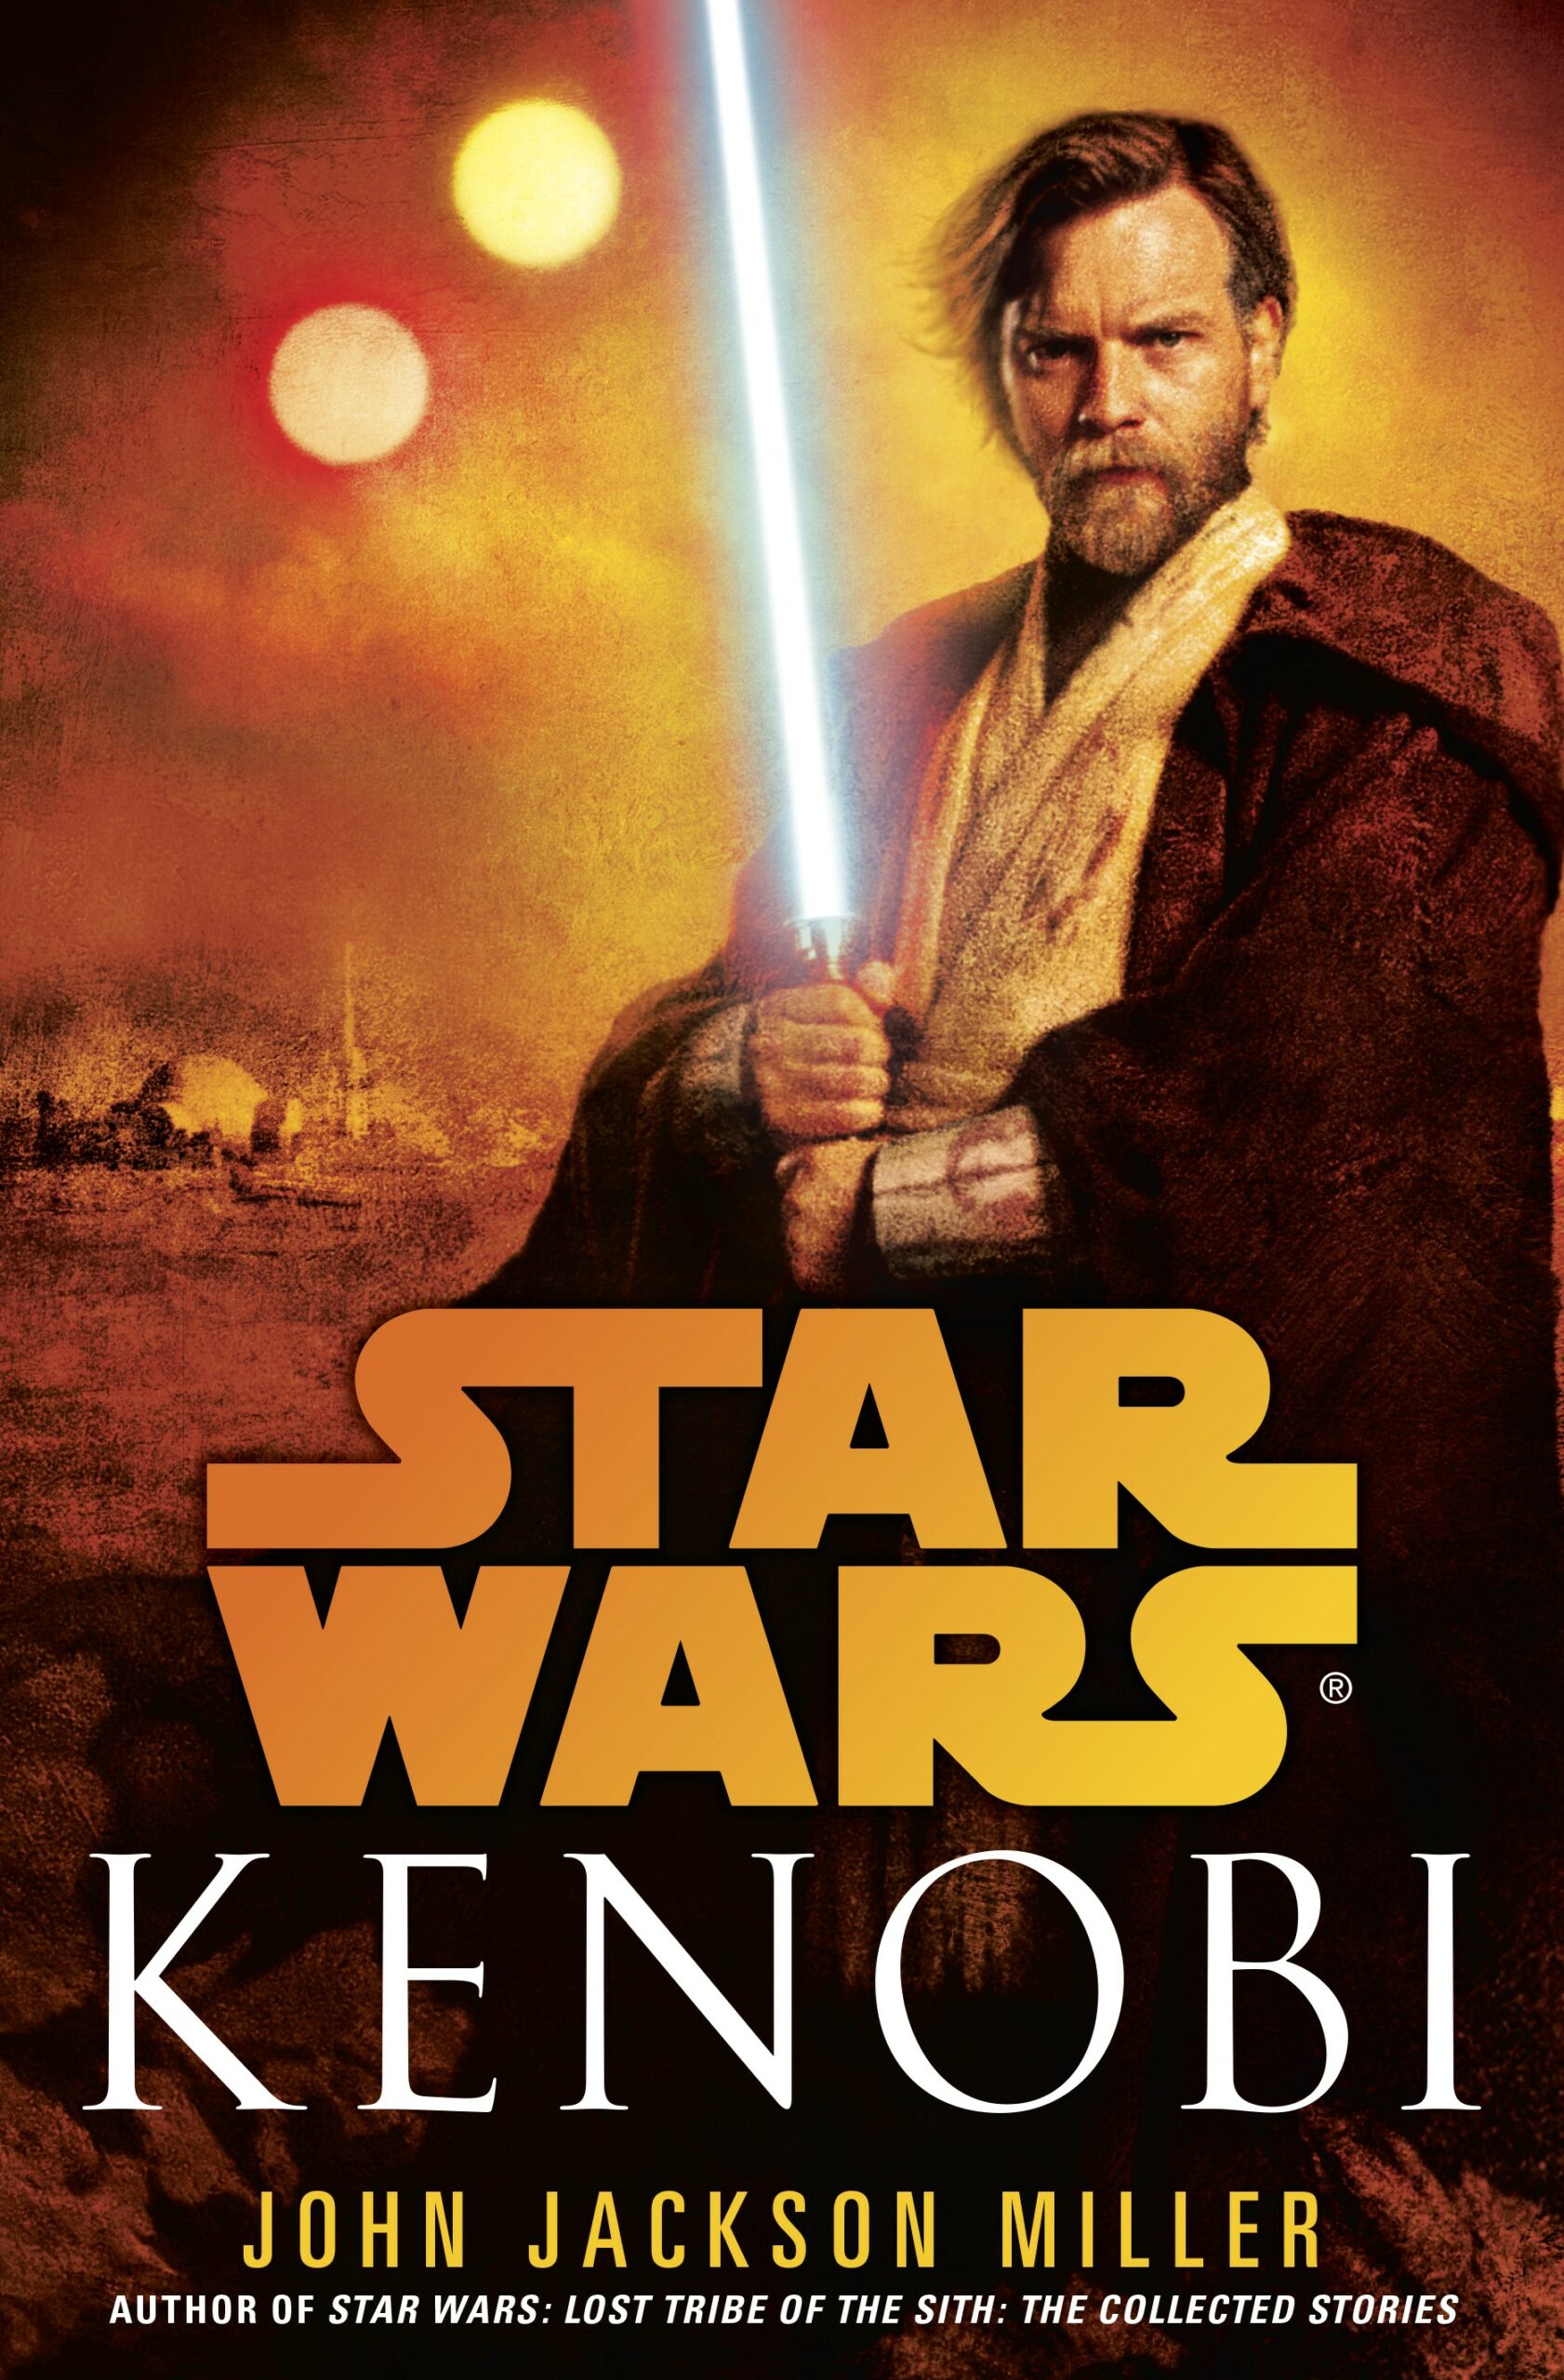 Kenobi (novel)